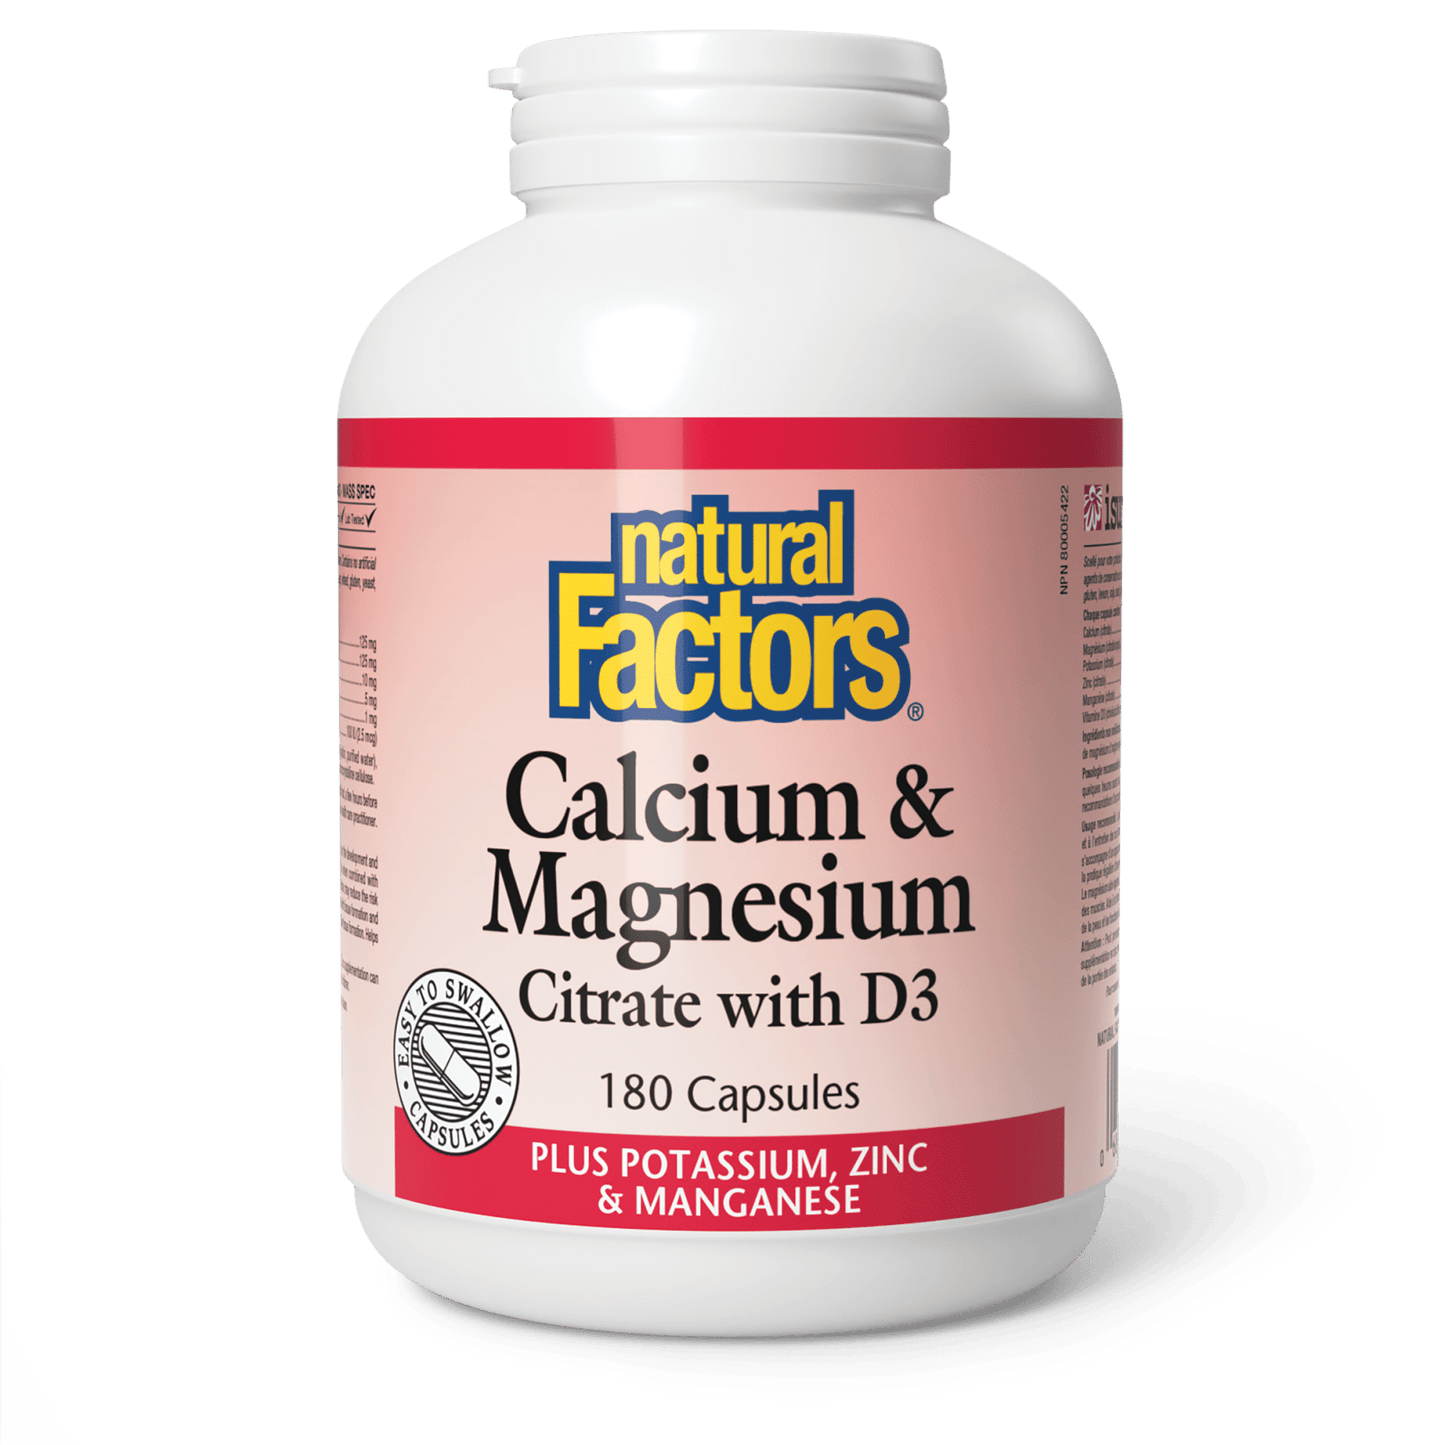 Calcium & Magnesium Citrate with D3 Plus Potassium, Zinc & Manganese, Natural Factors|v|image|1629